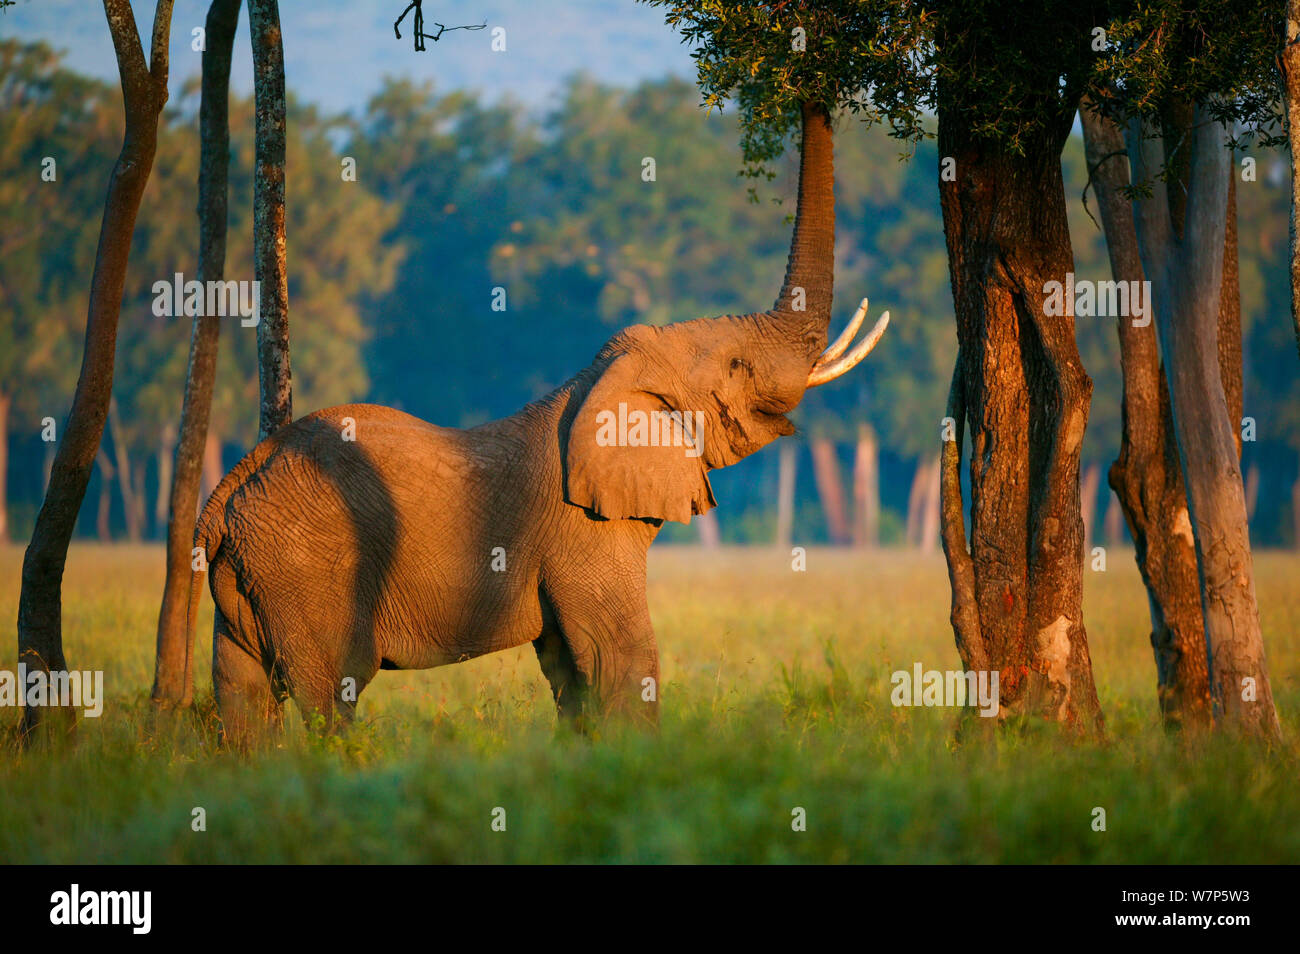 L'éléphant africain (Loxodonta africana), homme alimentation par arbre. Masai-Mara Game Reserve, Kenya. Banque D'Images